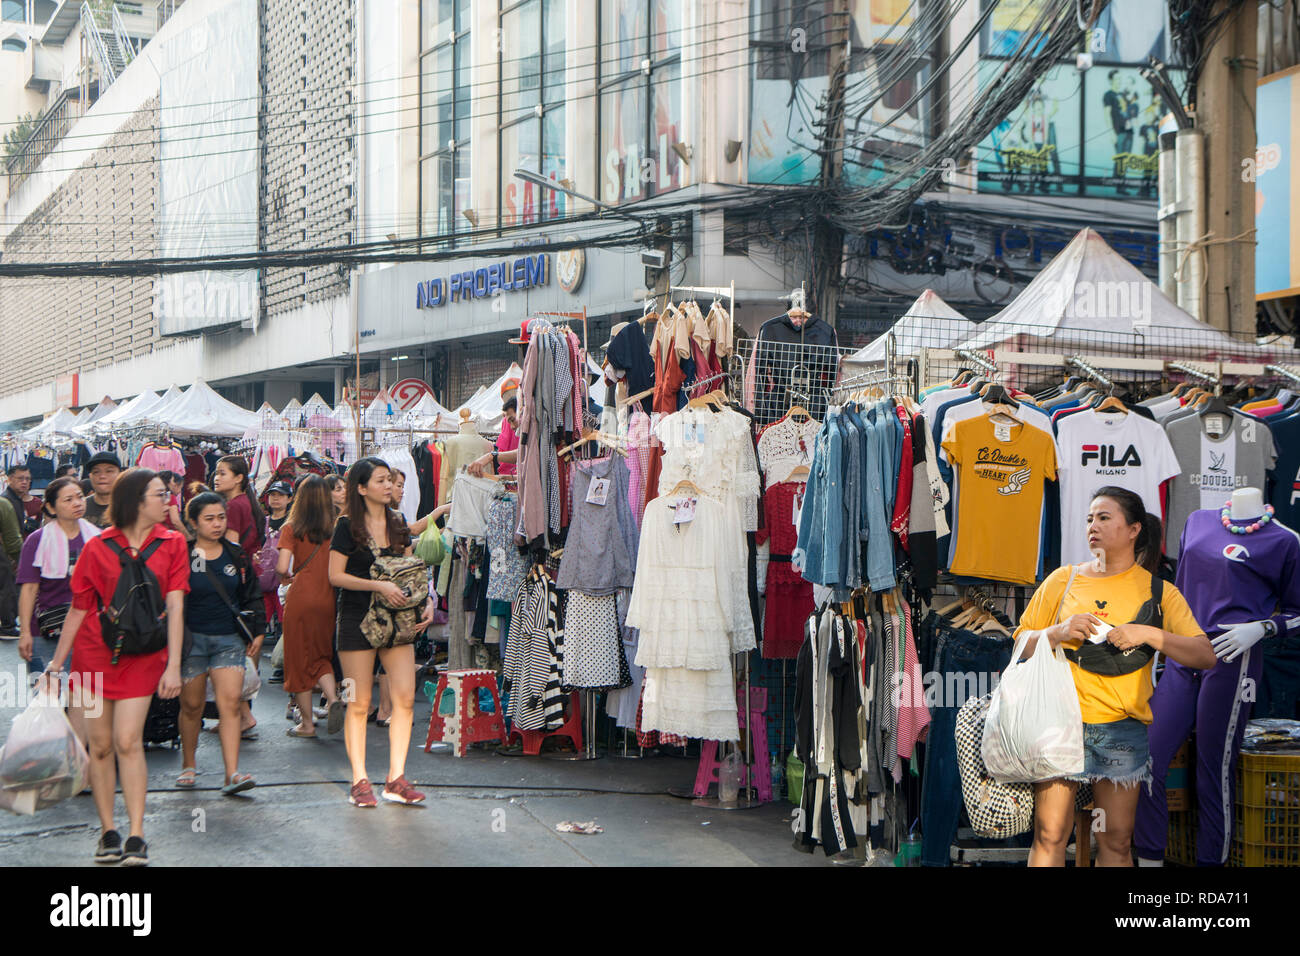 Un marché des vêtements au marché du textile de Pratunam dans la ville de Bangkok en Thaïlande en Southeastasia. Thaïlande, Bangkok, novembre, 2018 Banque D'Images